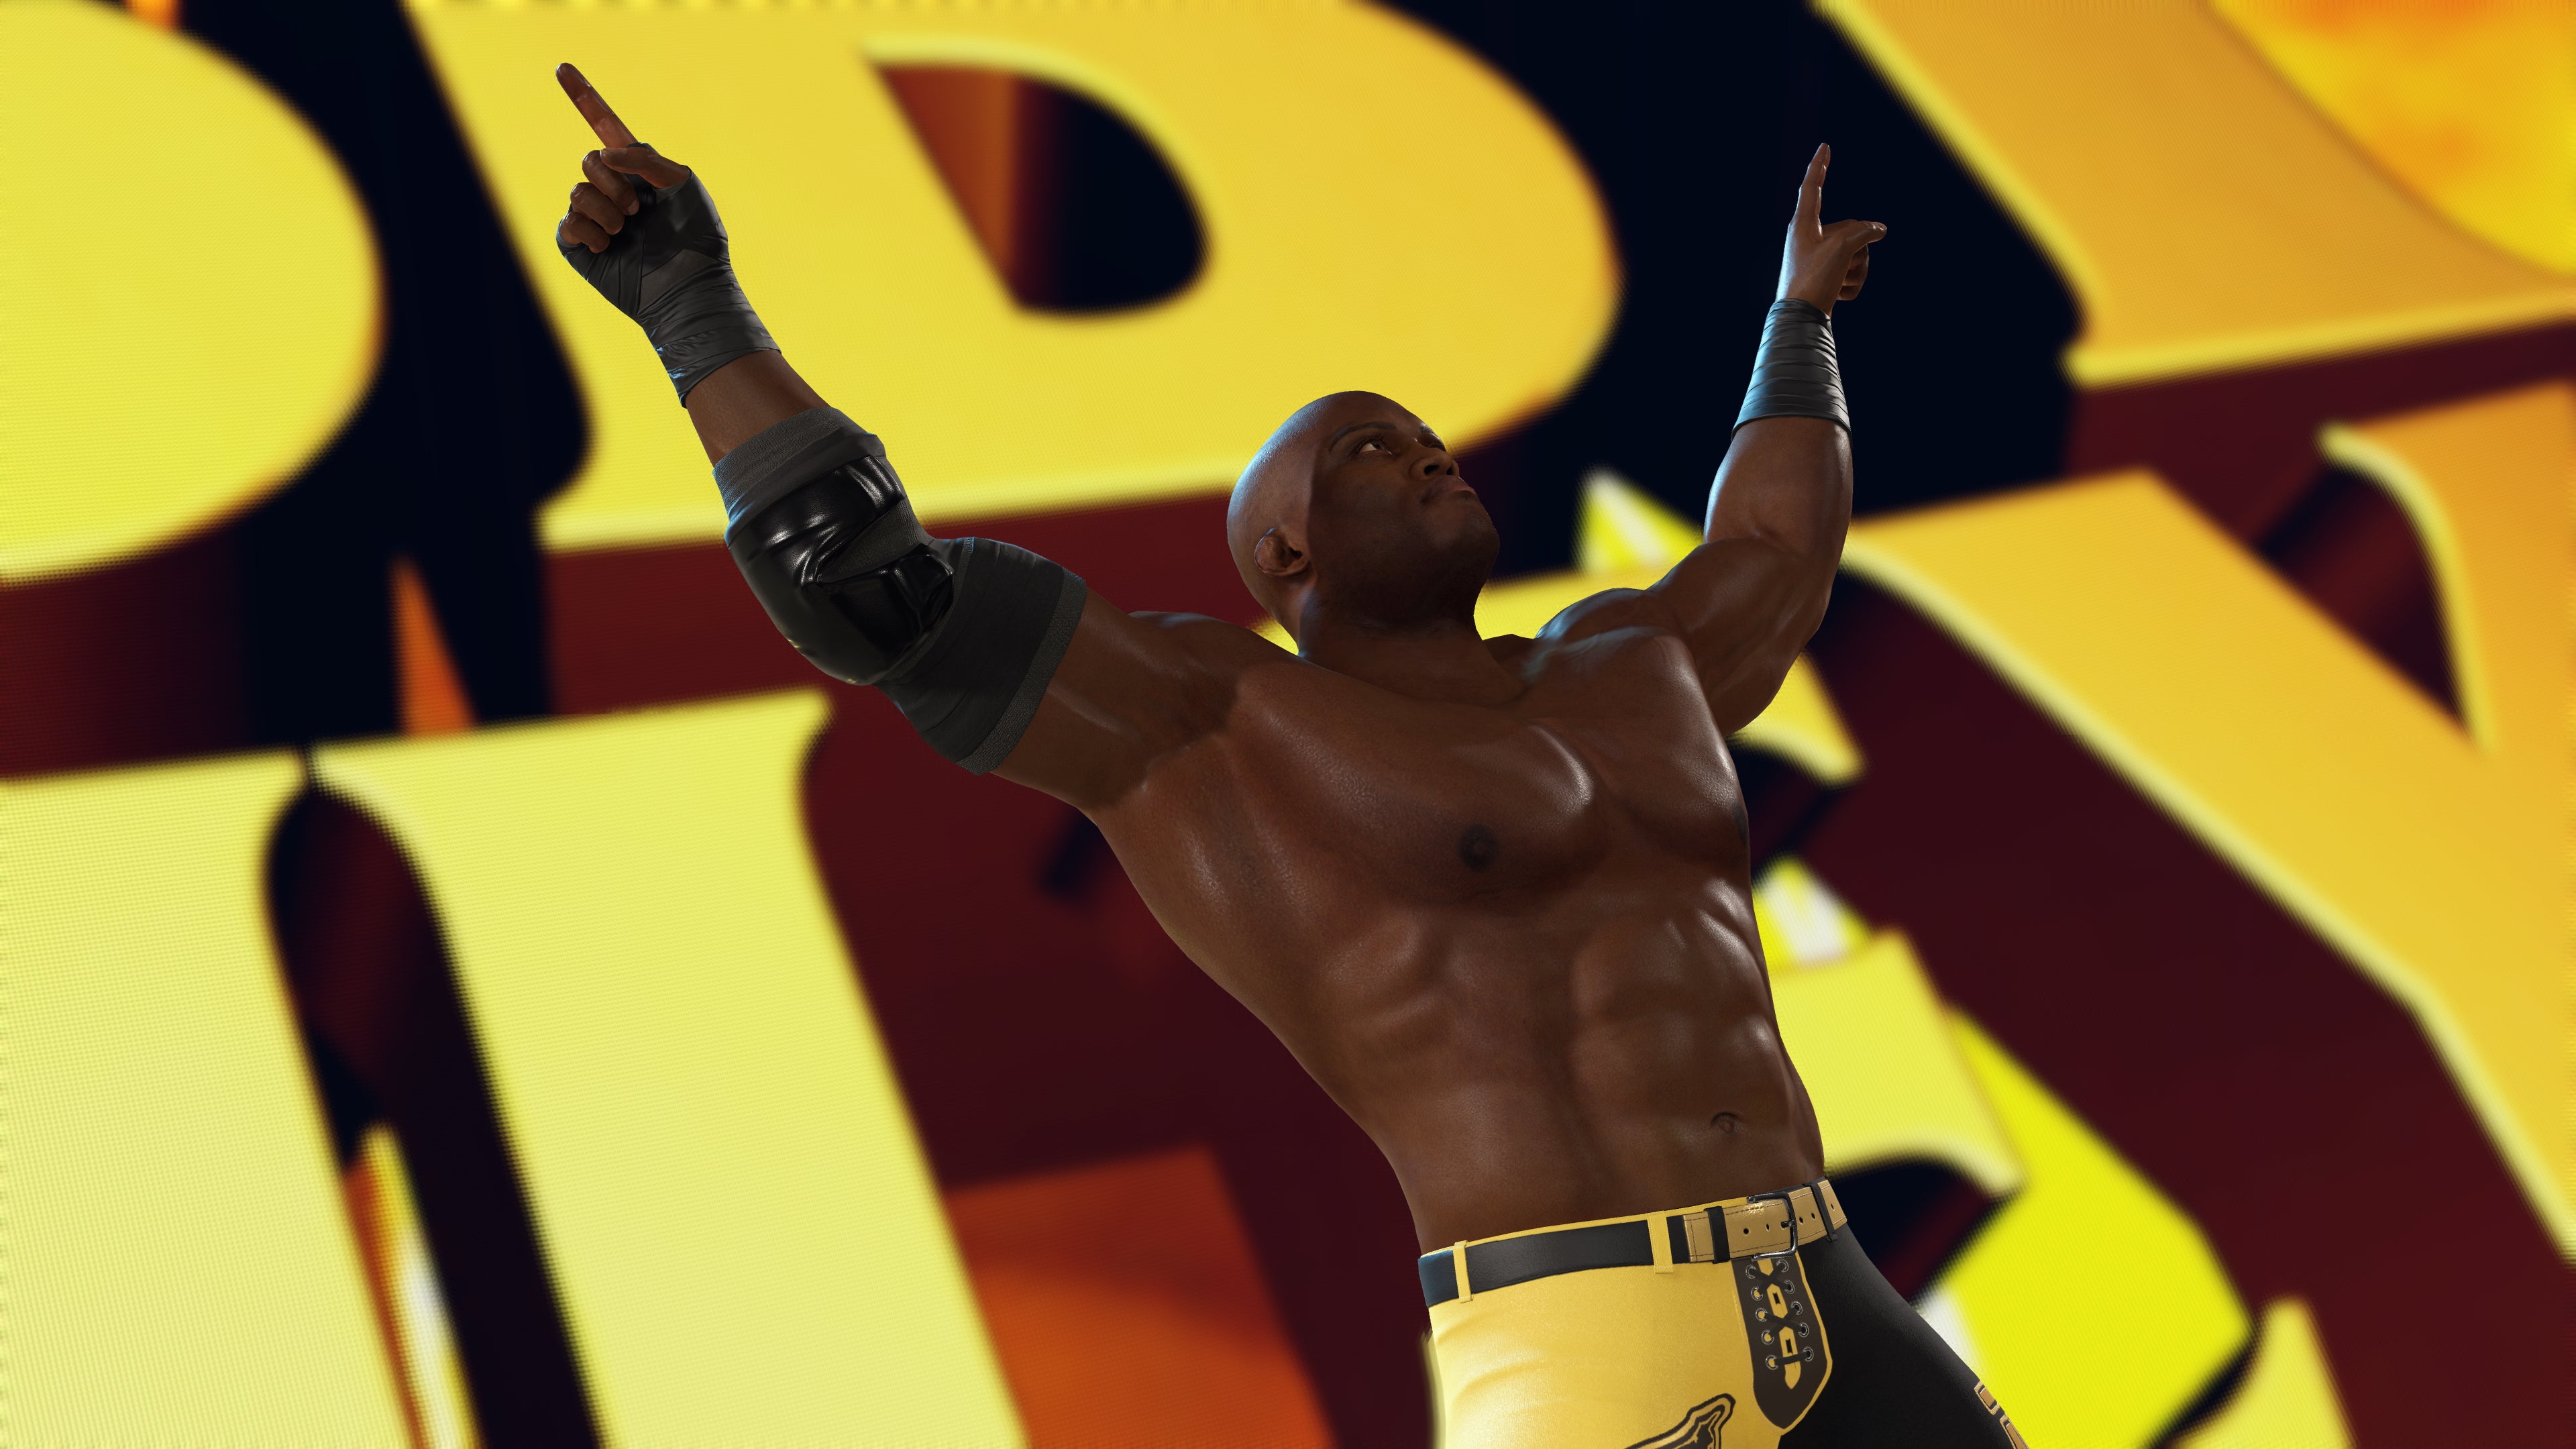 WWE 2K23 - PS5 [New] | Yard's Games Ltd